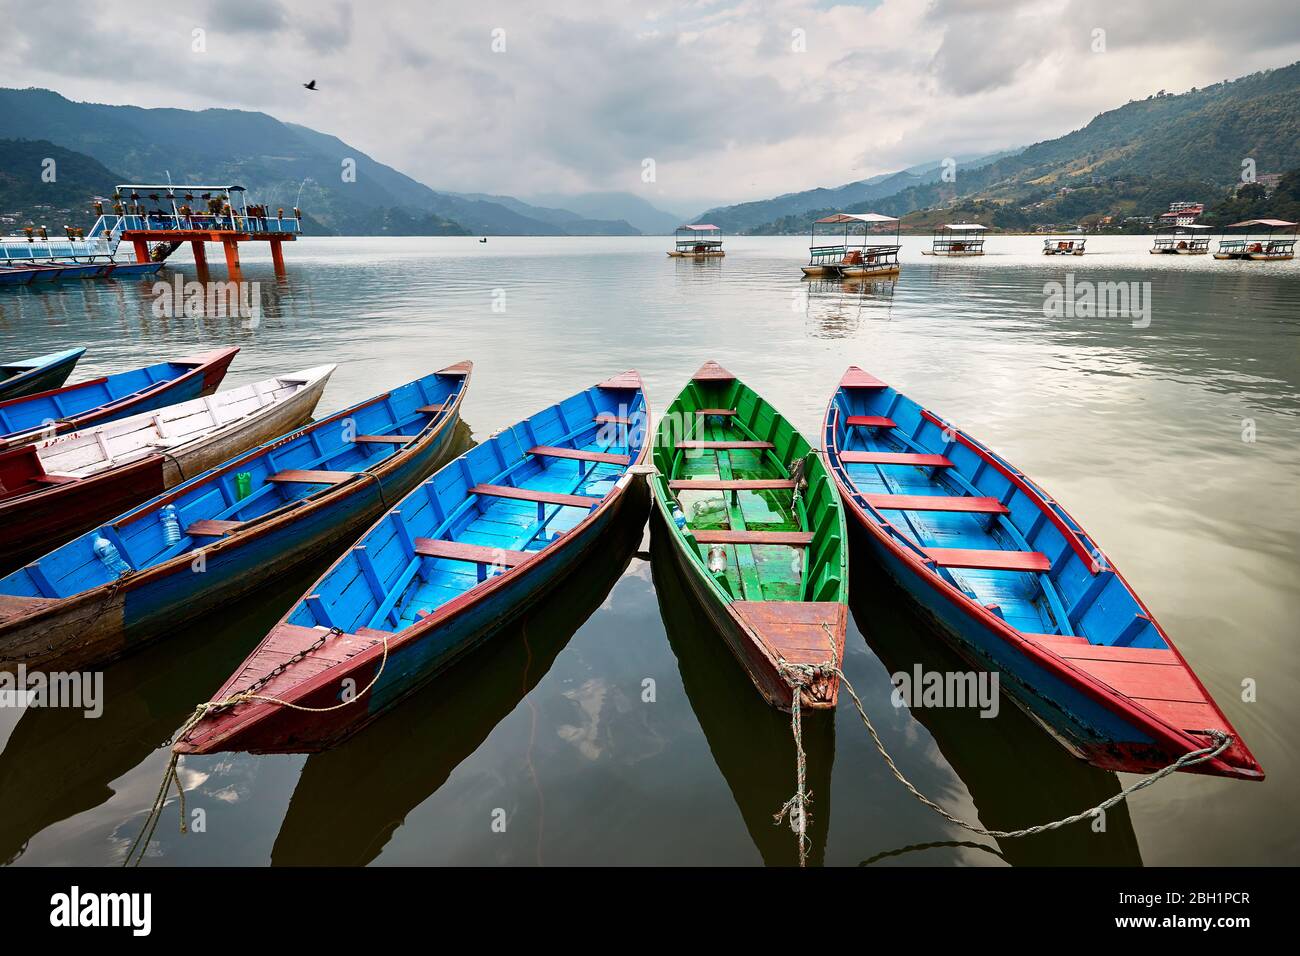 Color boats at Phewa lake shore in Pokhara, Nepal. Stock Photo